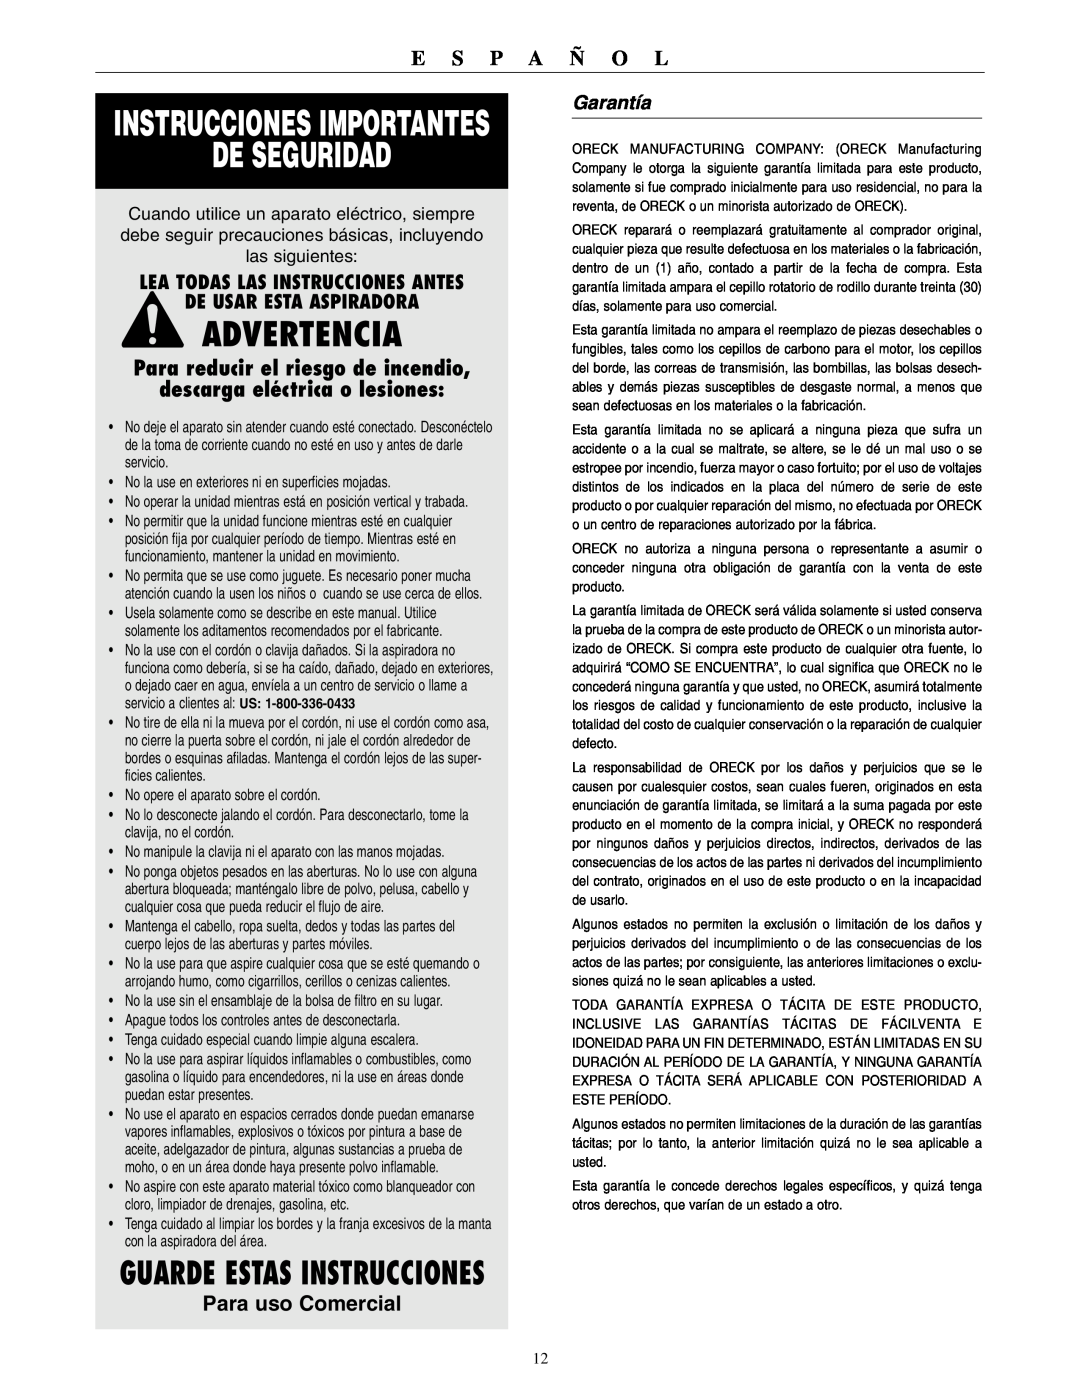 Oreck XL2000HHE De Seguridad, Advertencia, Instrucciones Importantes, Guarde Estas Instrucciones, Para uso Comercial 